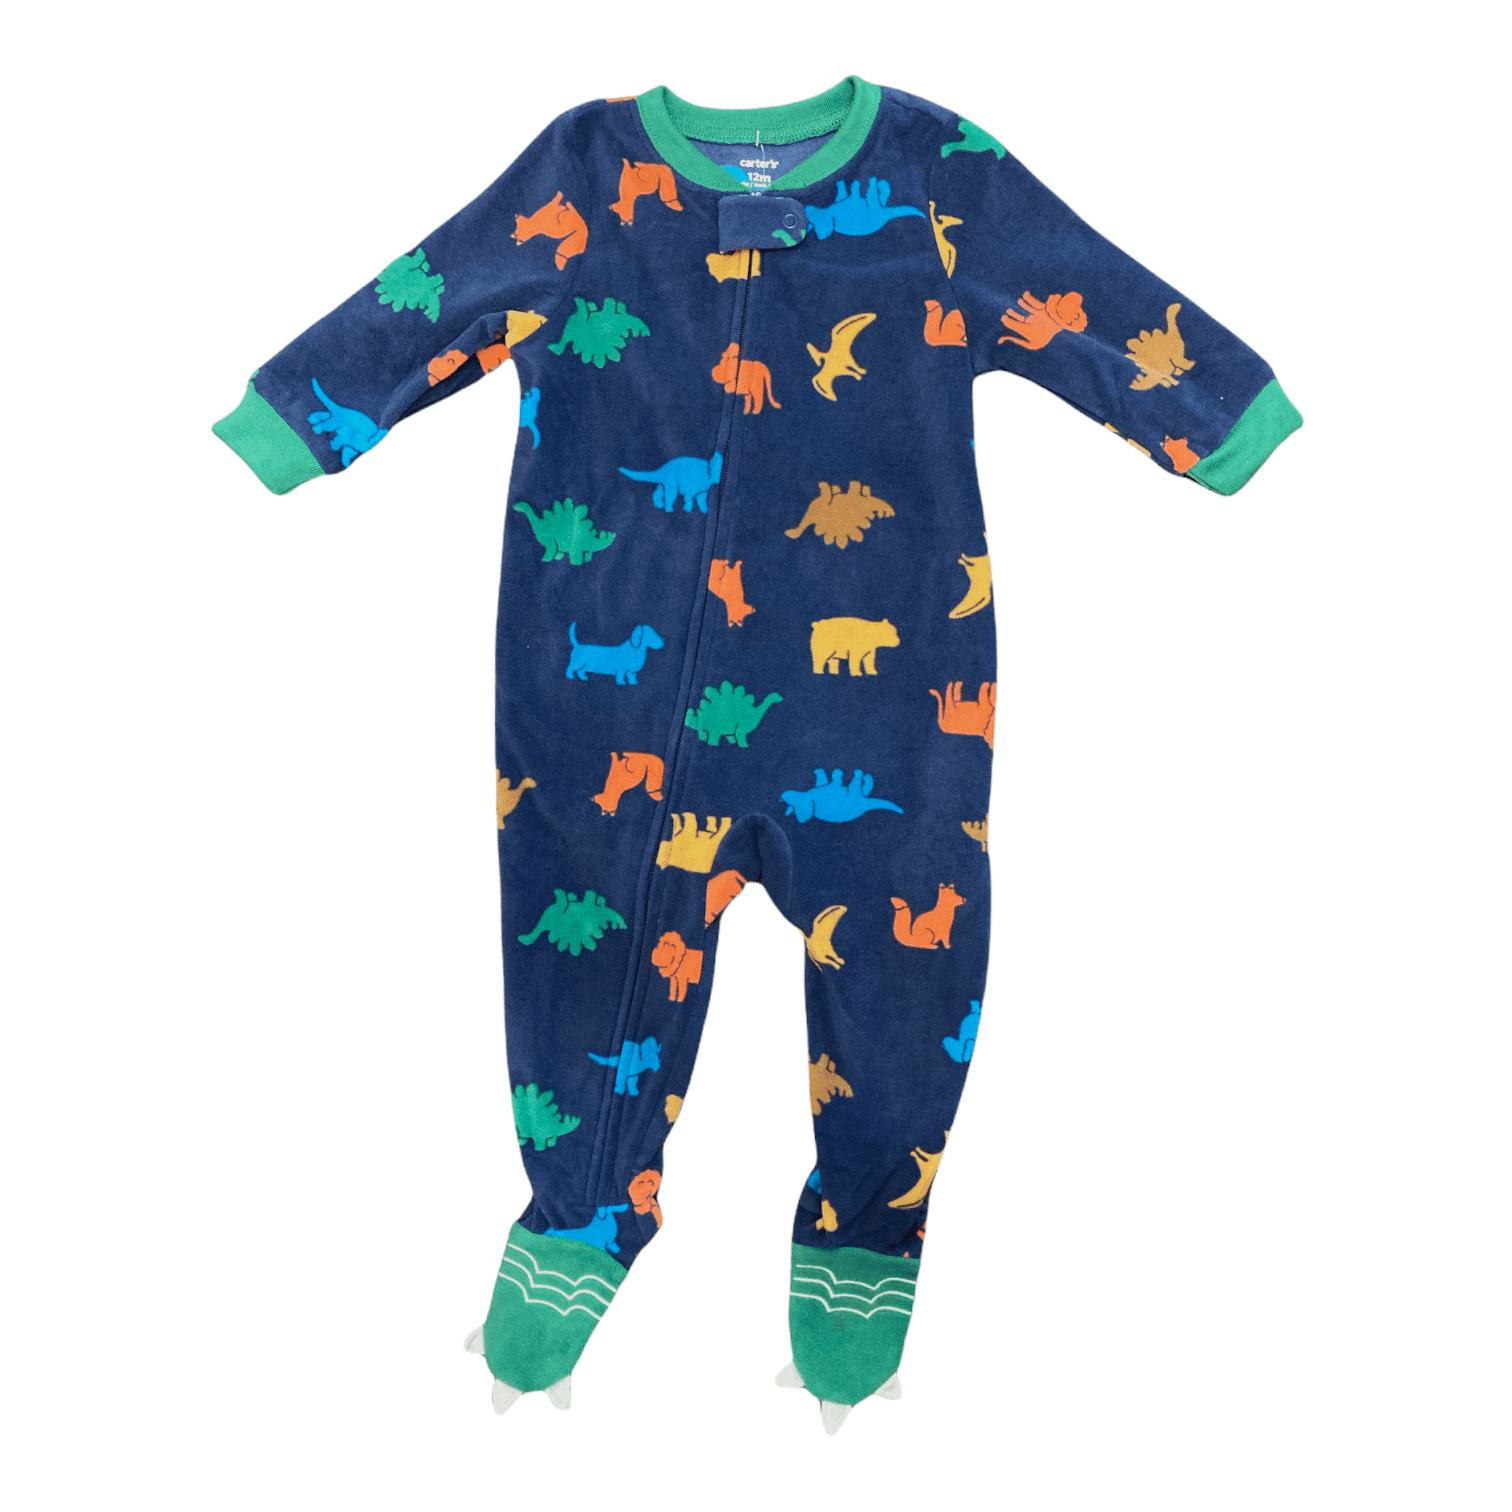 Carter's Baby Toddler Boy's Warm Soft Fleece Zip Up Footie Pajamas  (Charcoal Dragons, 3T) - Walmart.com